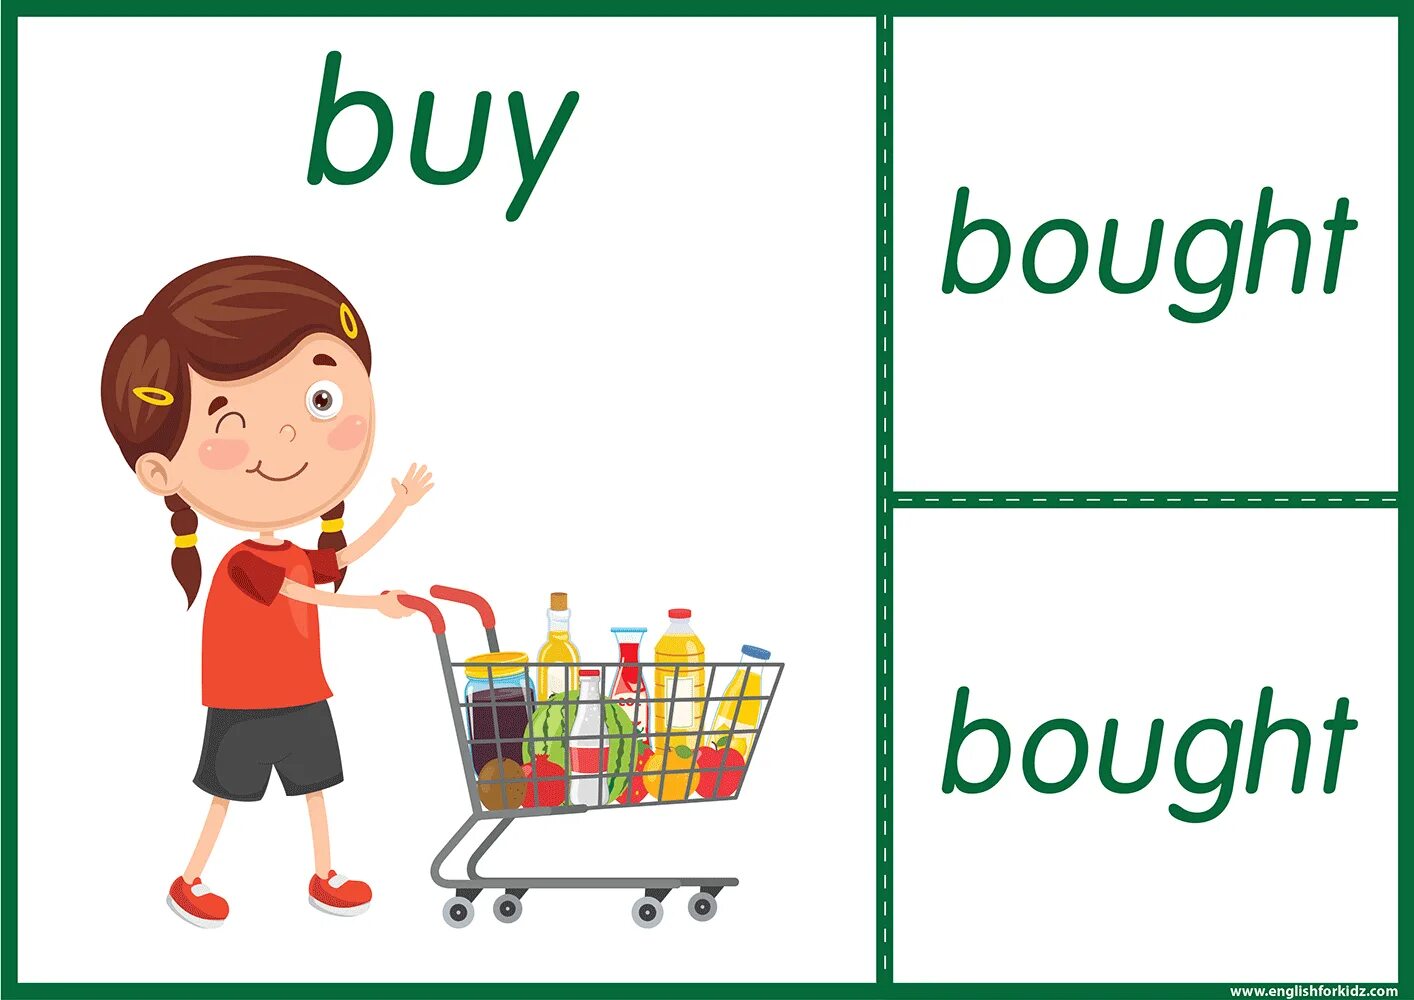 Shop verb. To buy картинка. Buy карточка для детей. Картинка buy verb. Buy рисунок.